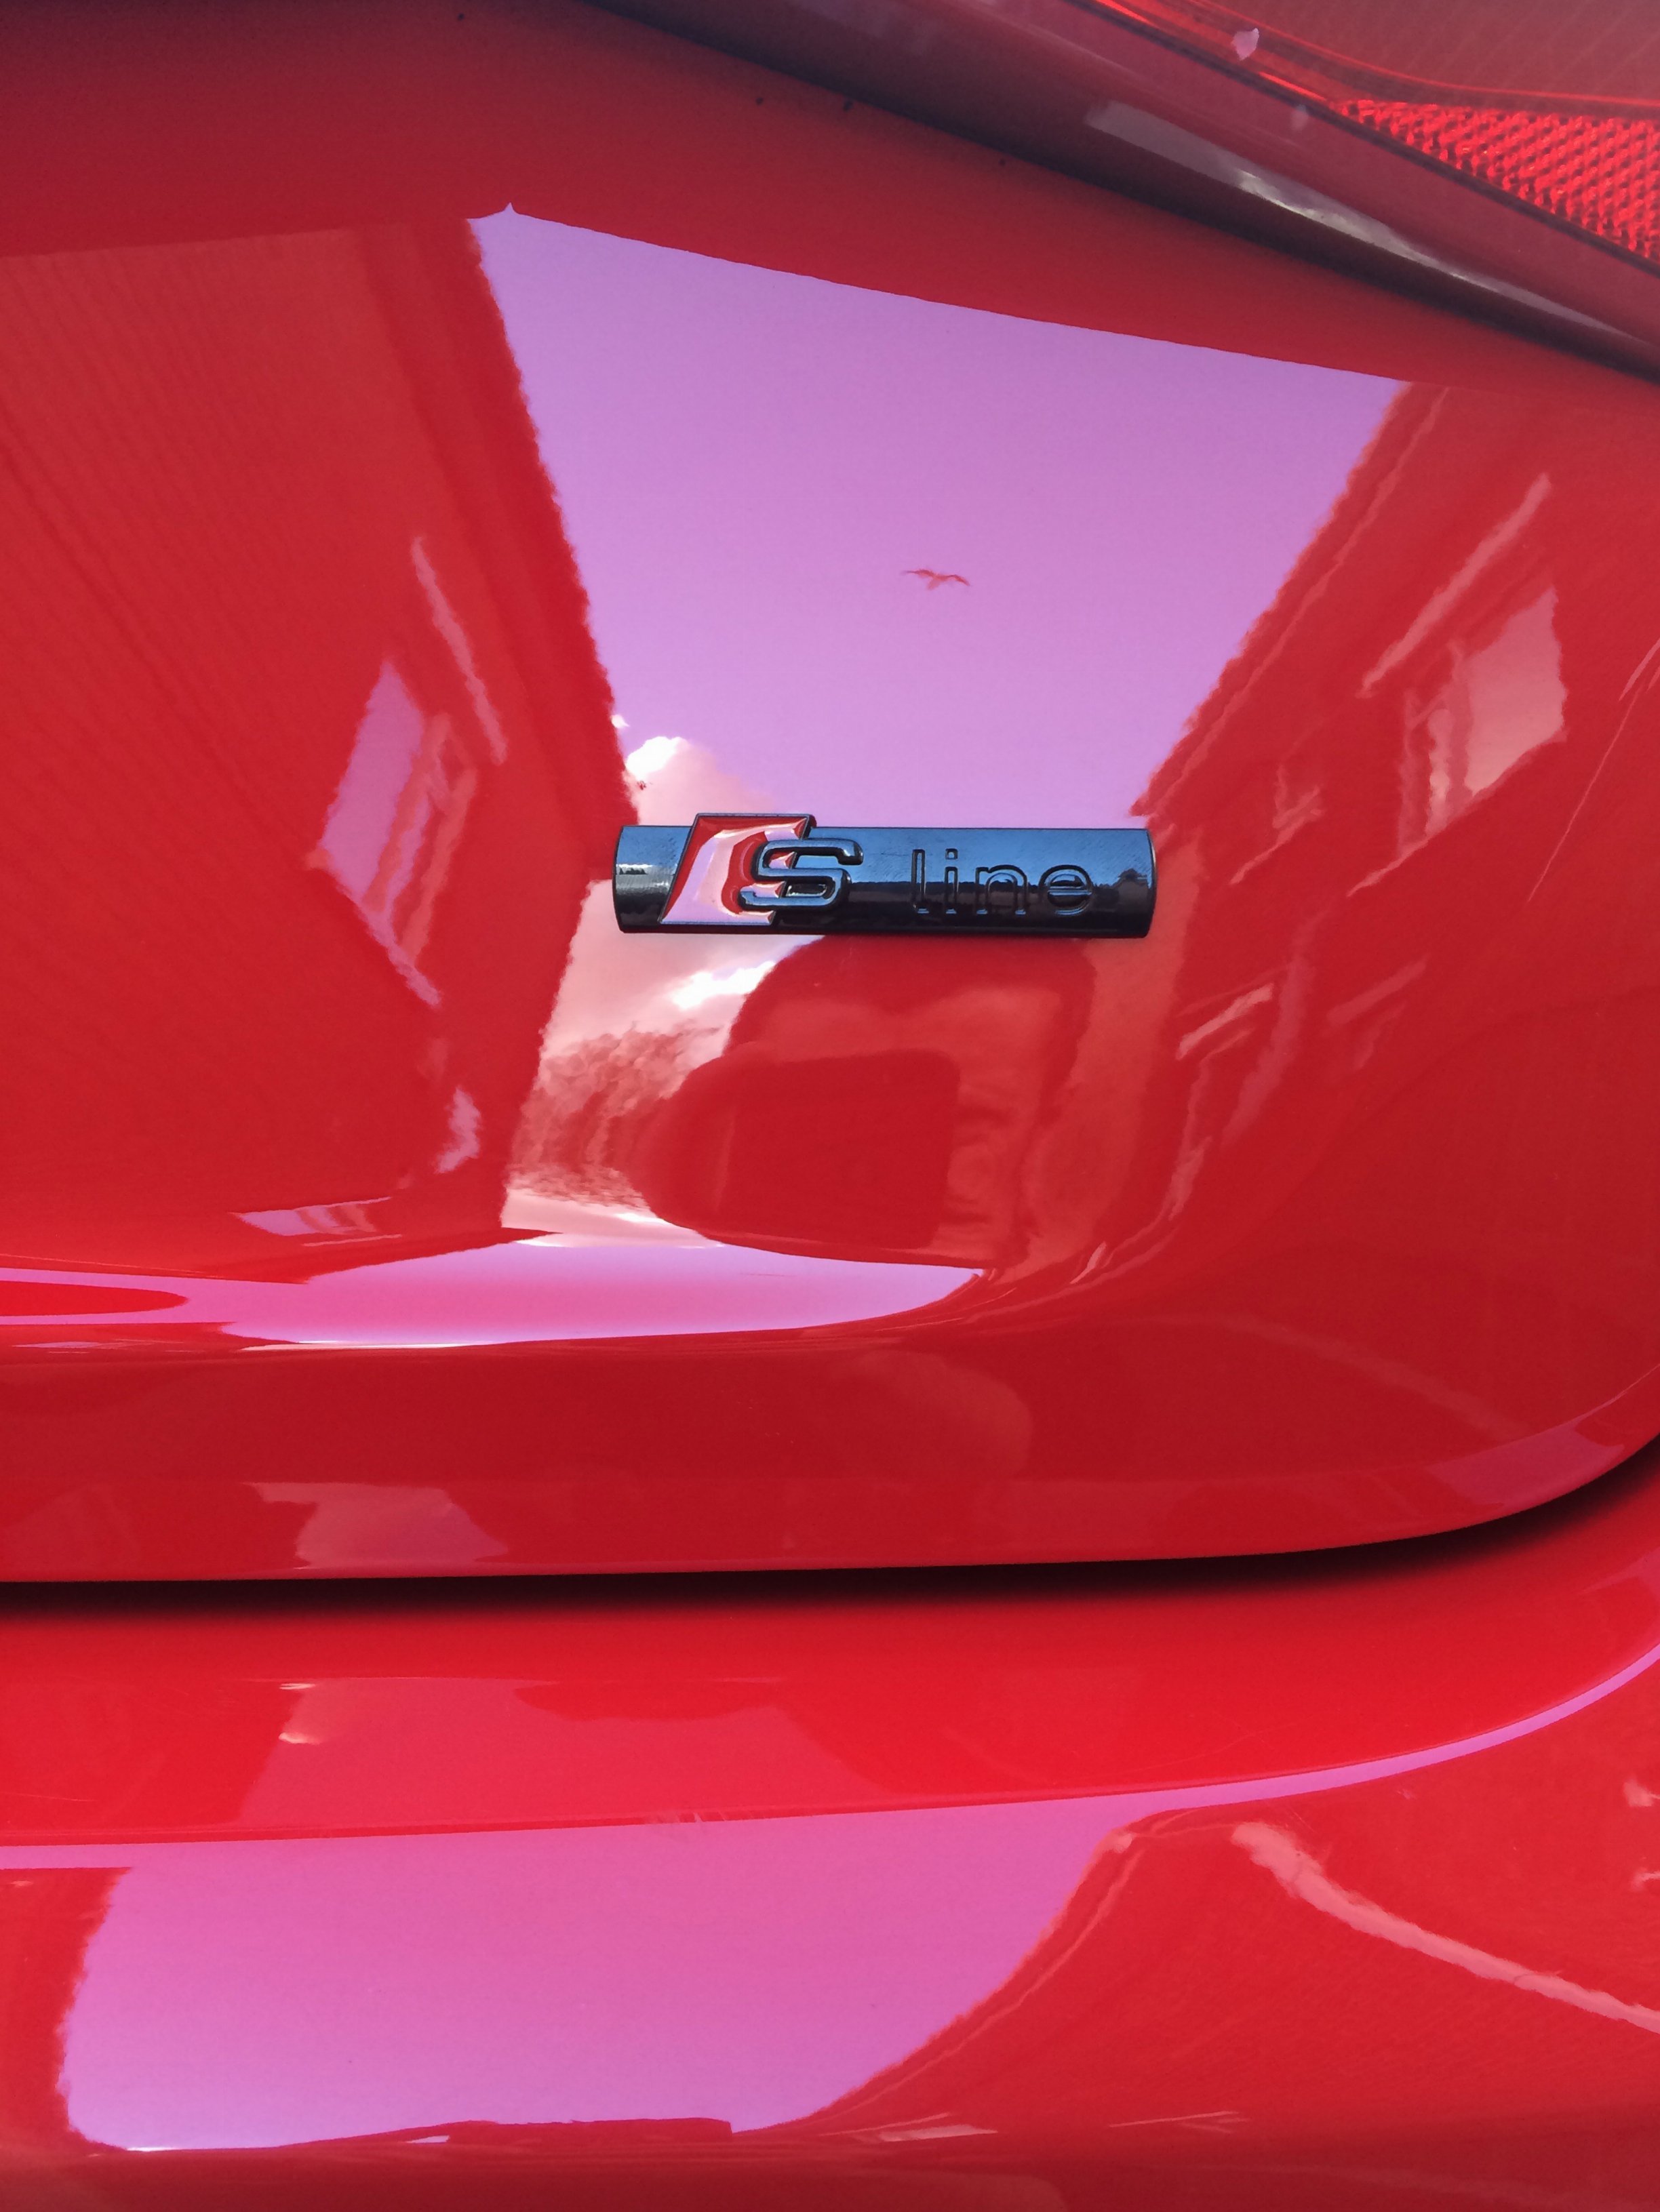 De-badged & new badges after clean but bad ending :(( | Audi-Sport.net